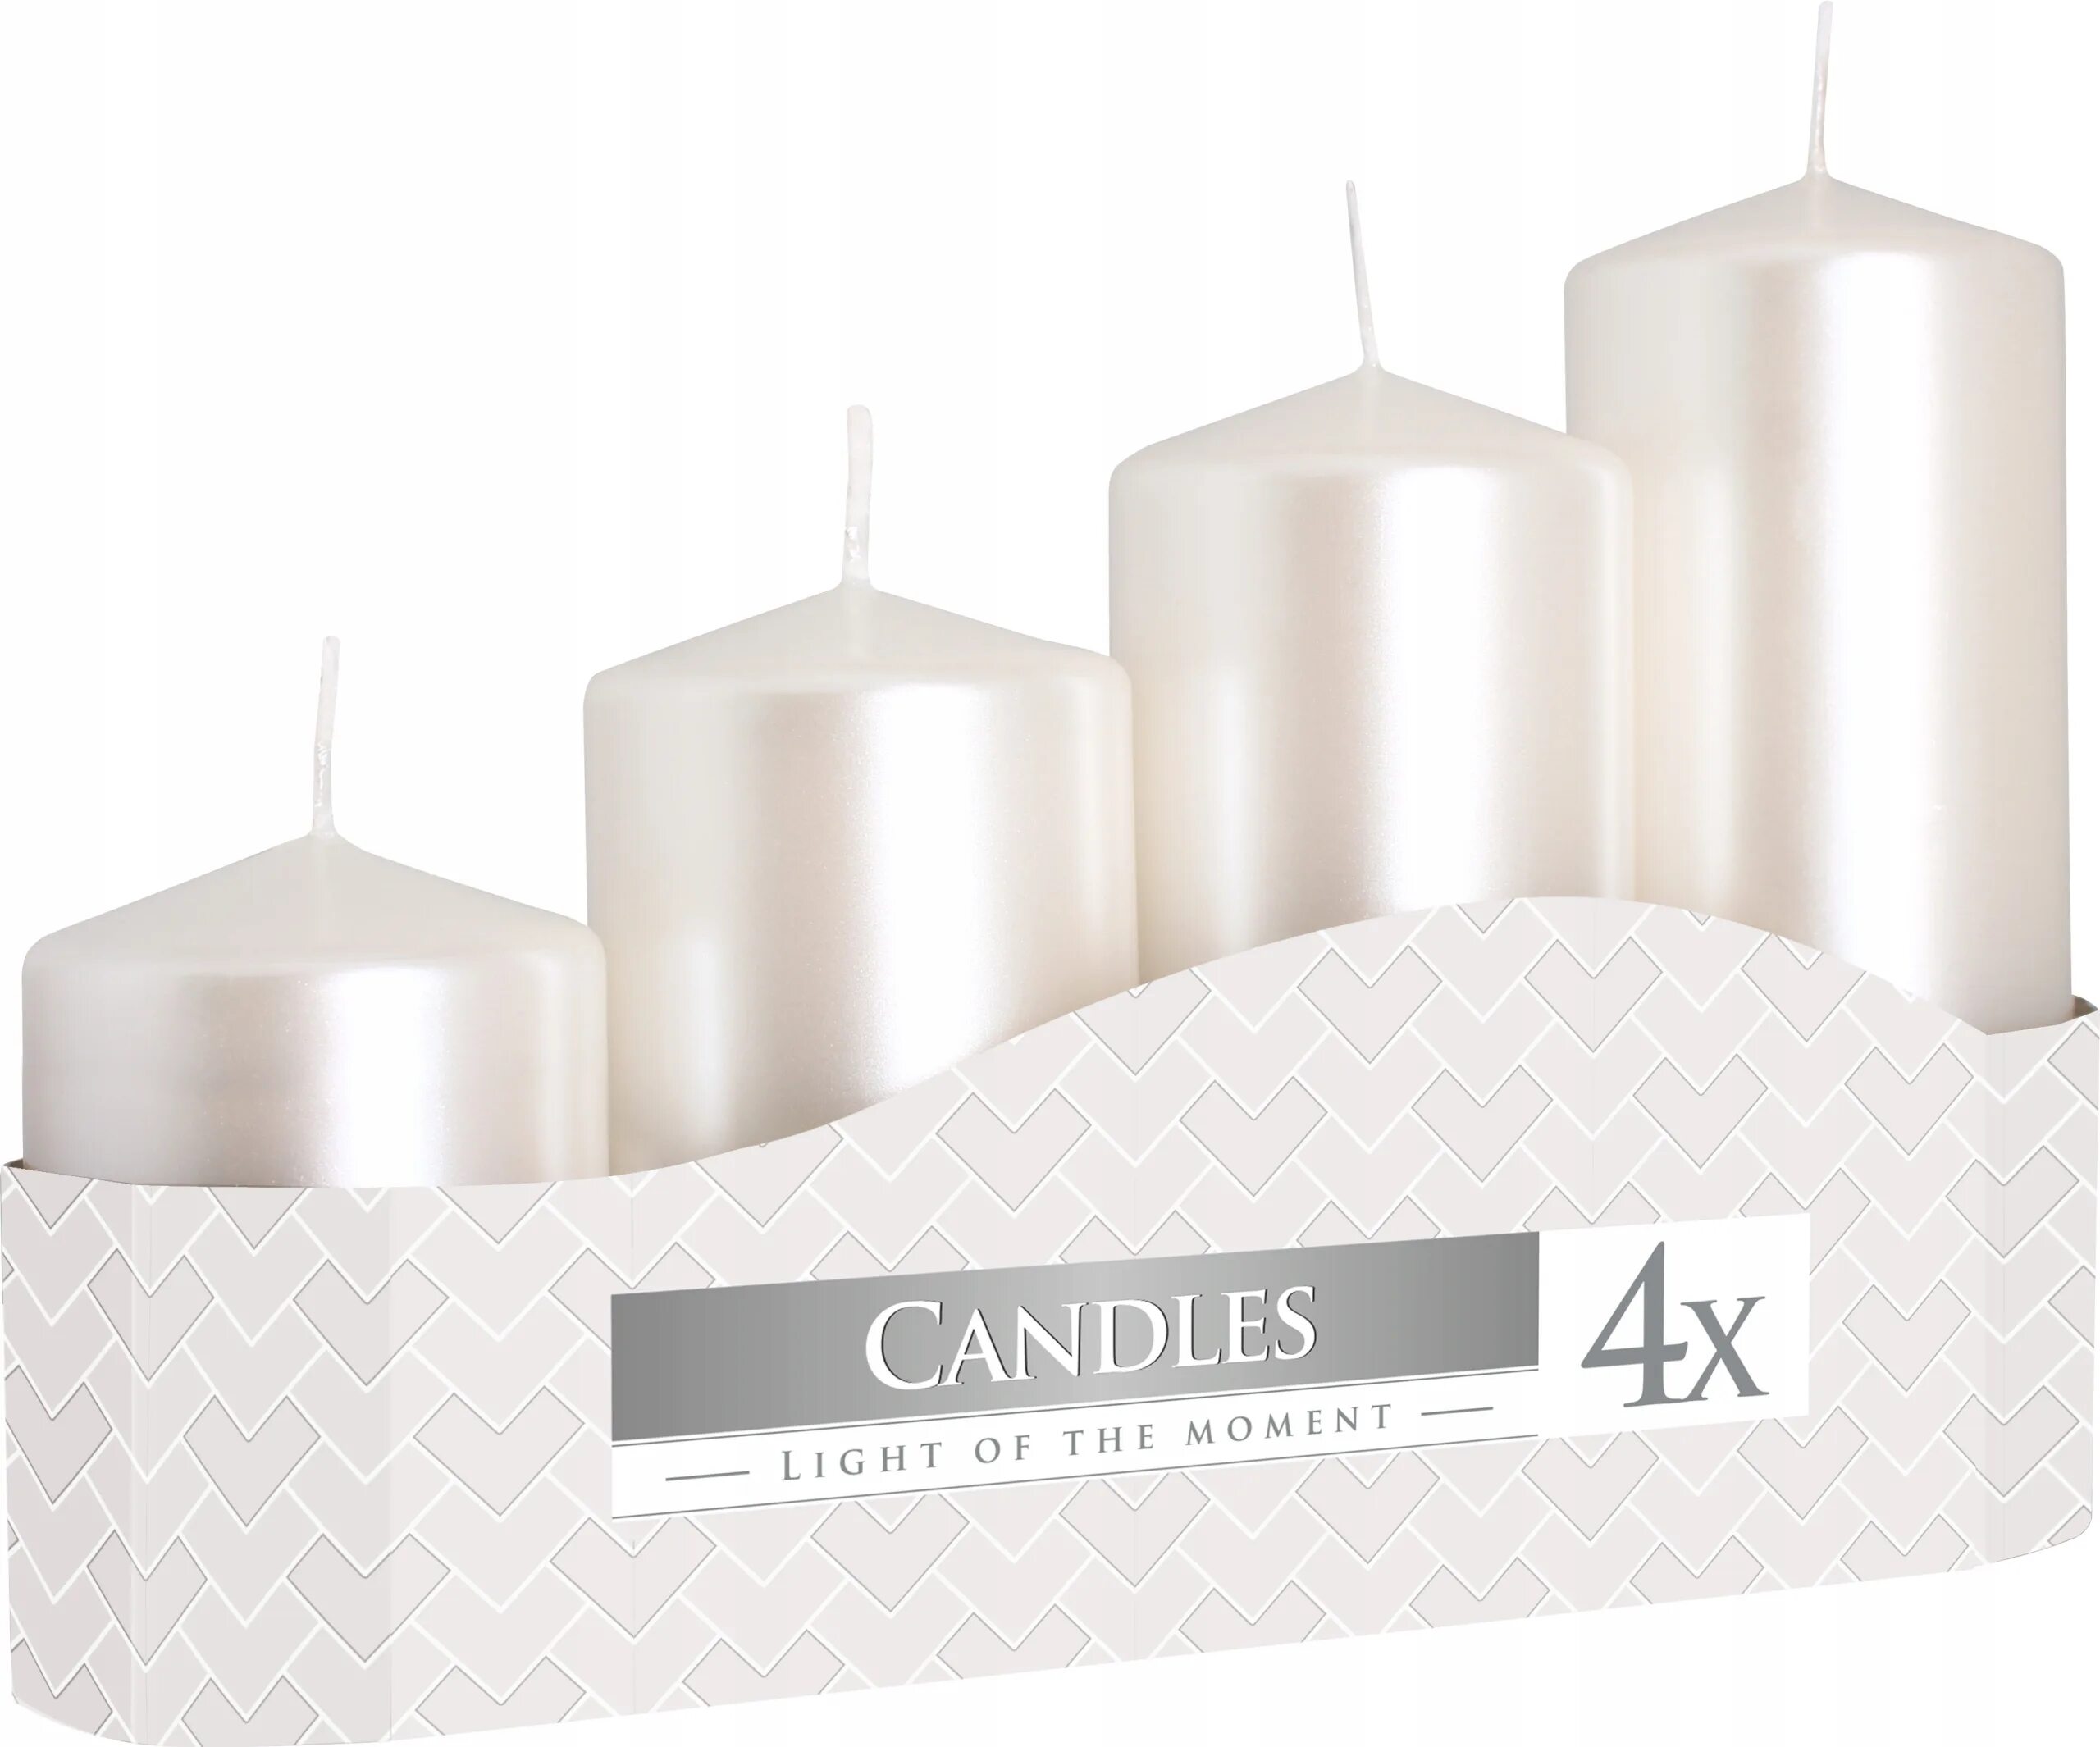 Купить комплект свечей. Свечи набор SBN Pillar Candles столбик 3*5см белые 8шт o-2558. Свечи SBN Pillar Candles столбик 4*5см белые 2шт o-2556. Свечи декоративные белые. Столовые свечи.